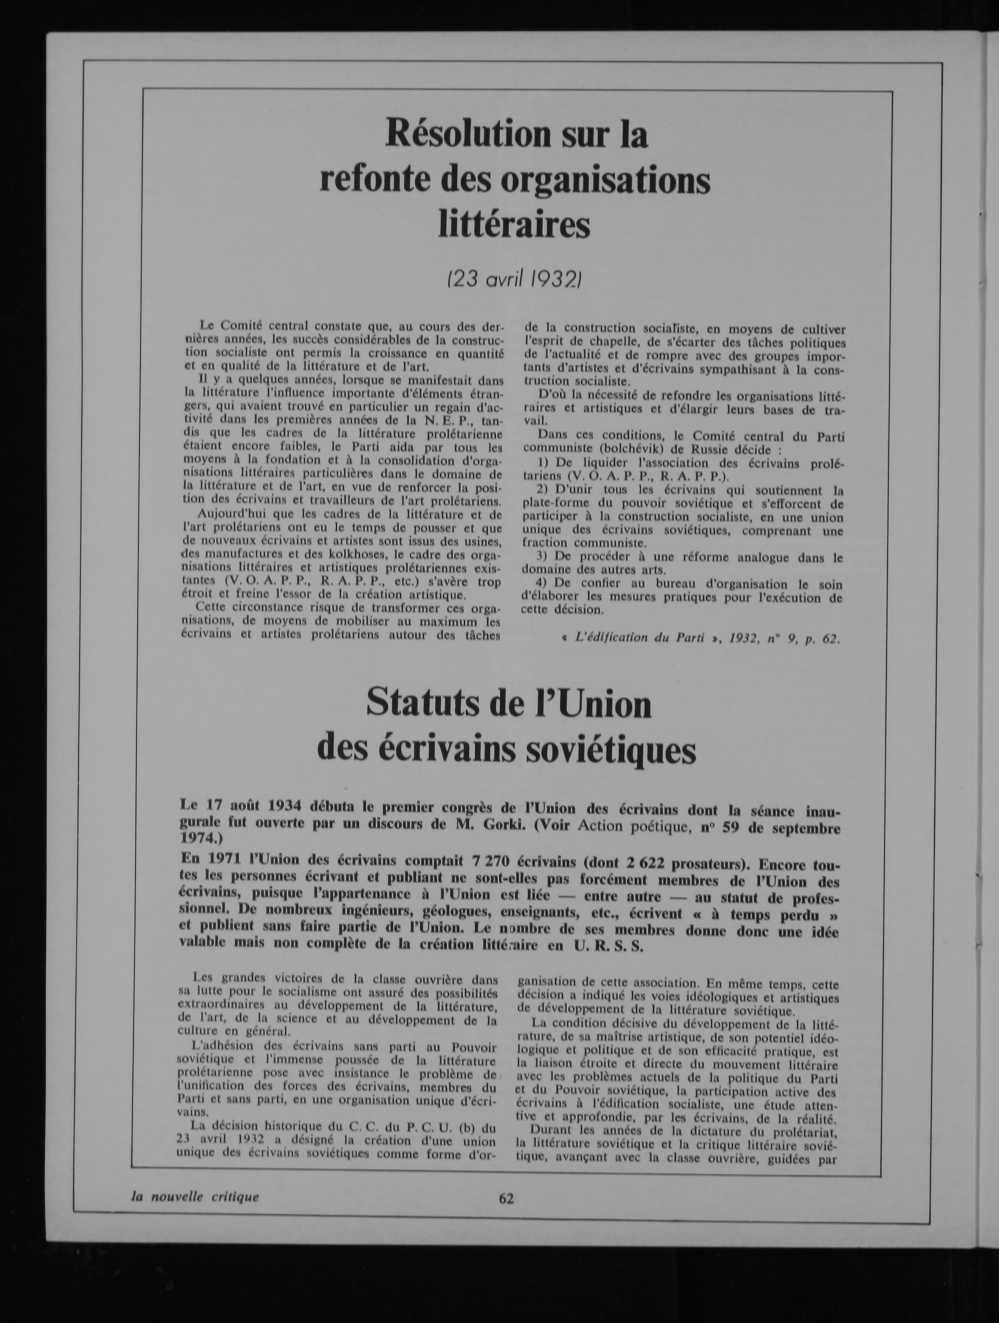 Résolution sur la refonte des organisations littéraires (23 avril 1932) Le Comité central constate que, au cours des deroteres années, les succés considérables de la construclion socialiste ont